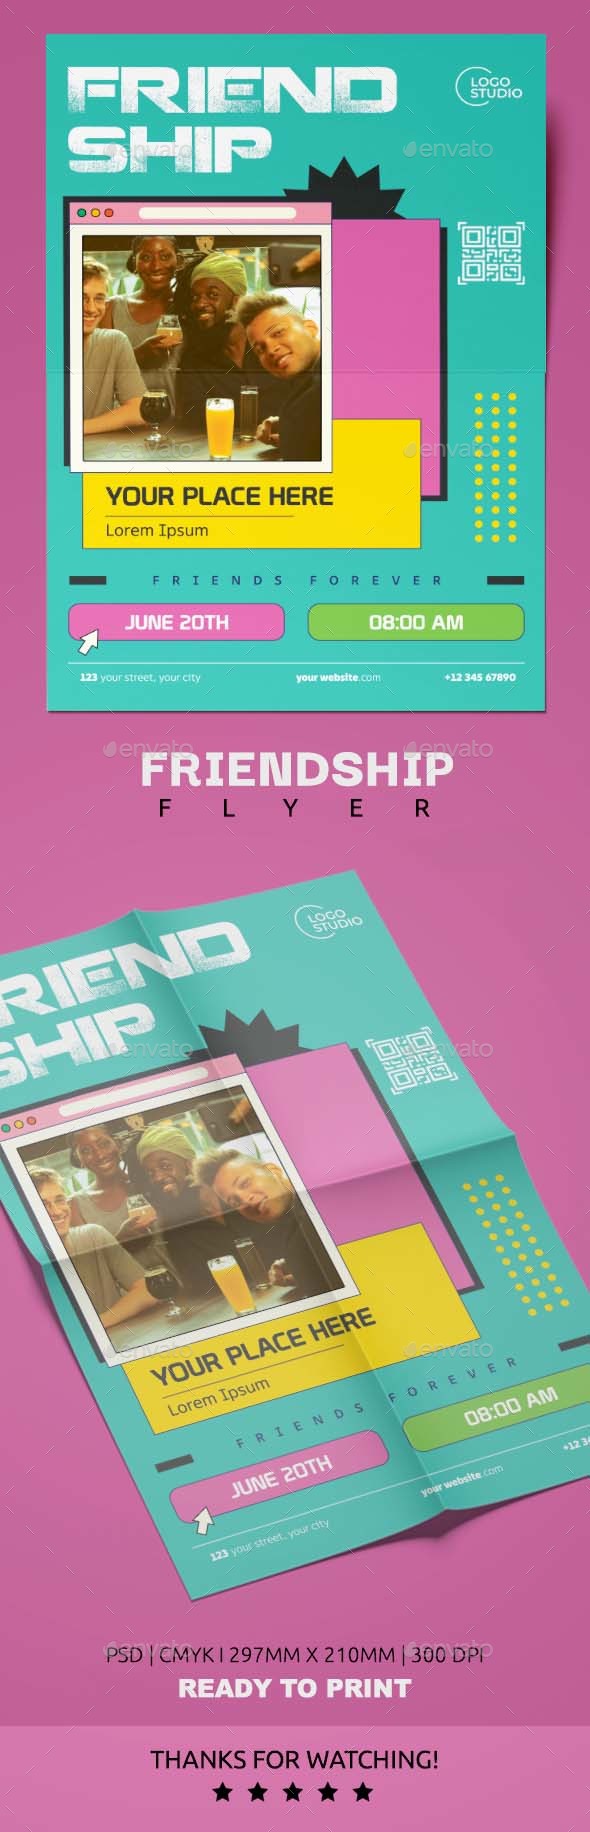 [DOWNLOAD]Friendship Day Flyer